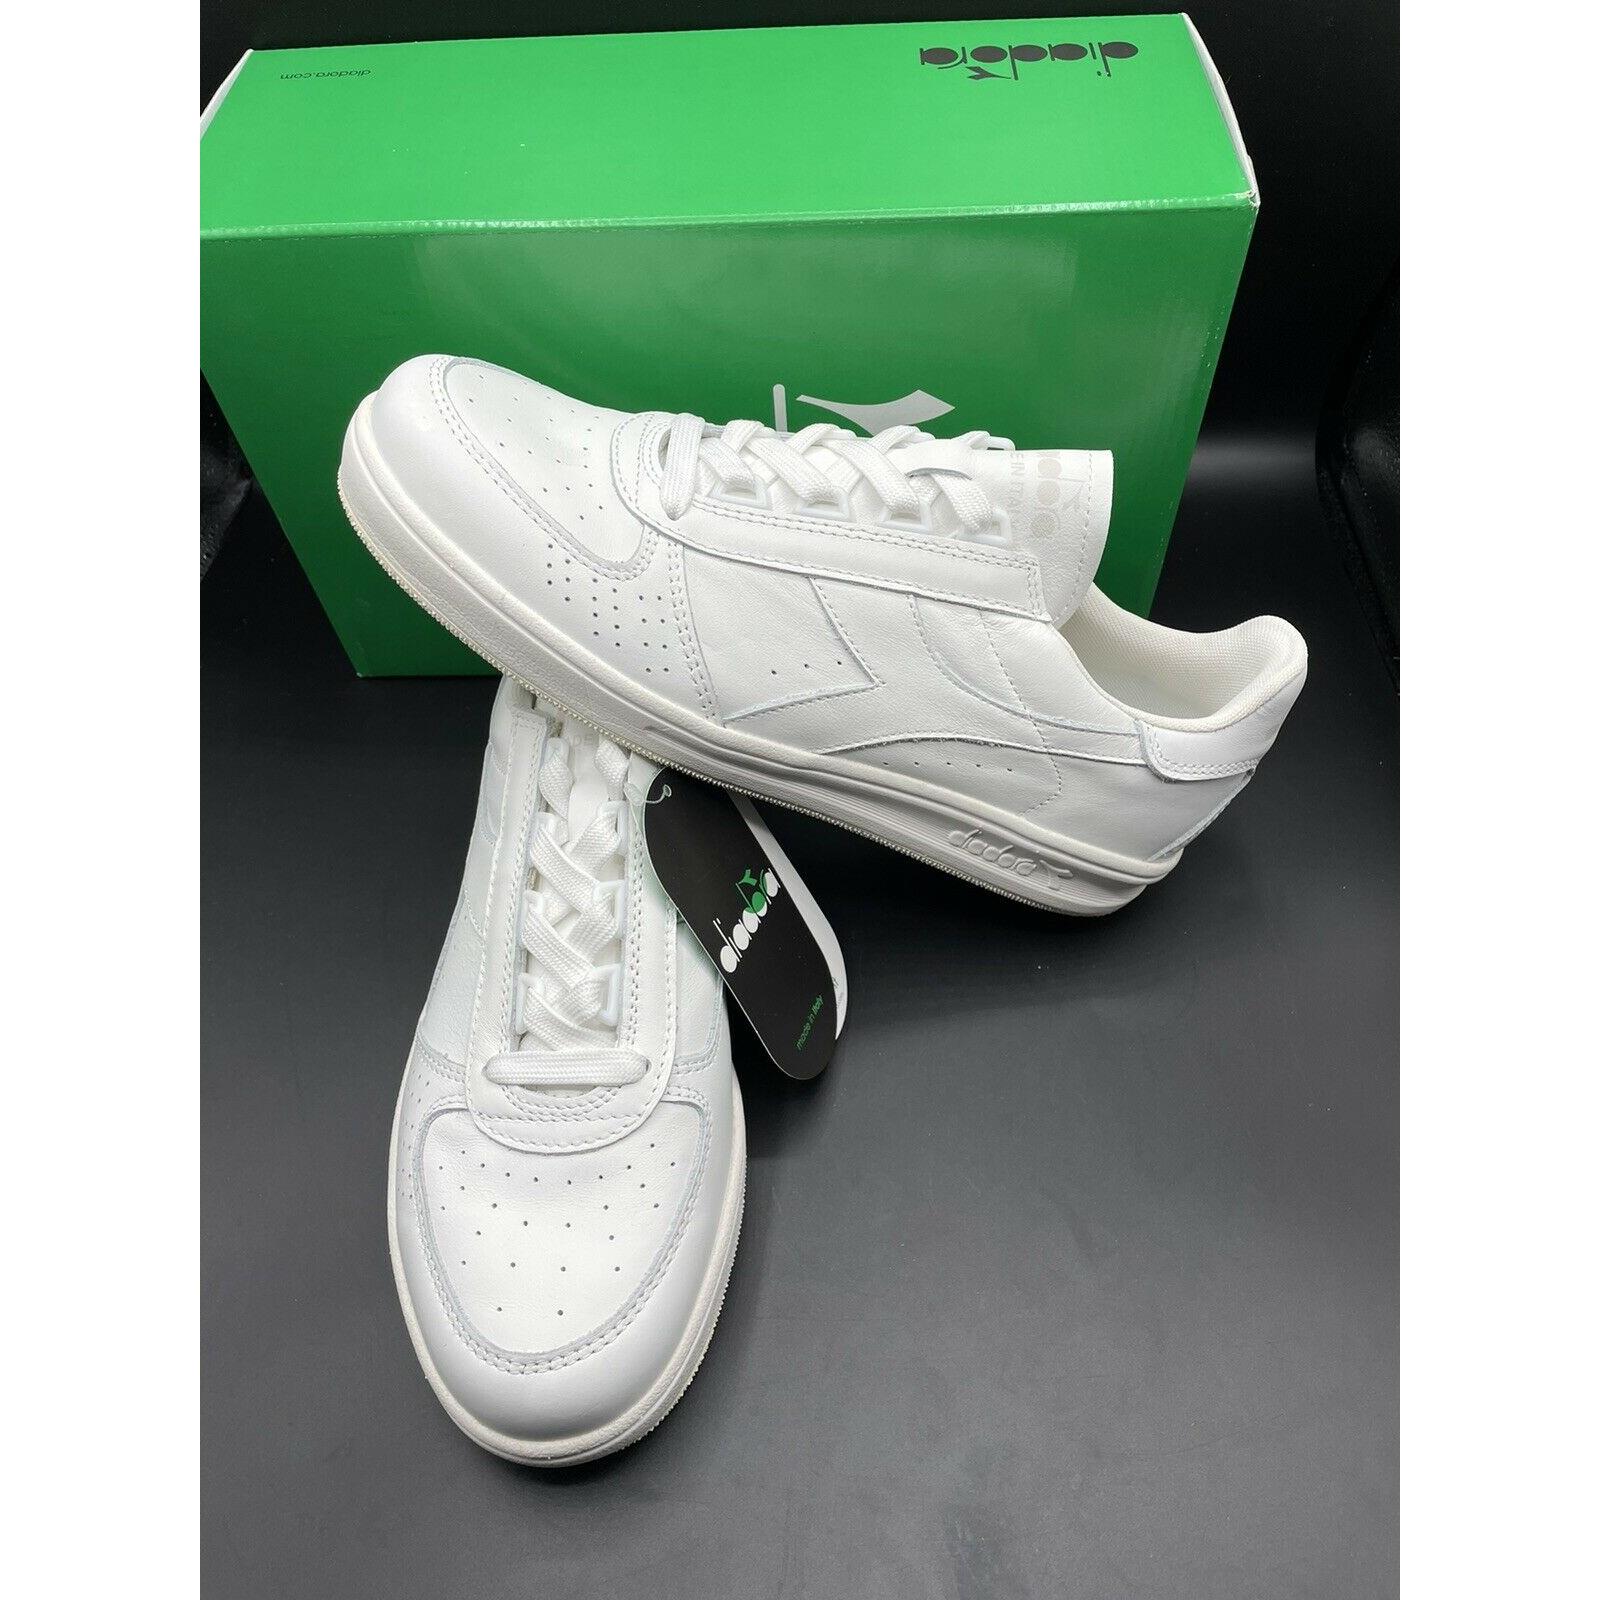 Diadora B Elite Triple White Leather Men`s Size 9.5 Tennis Shoes